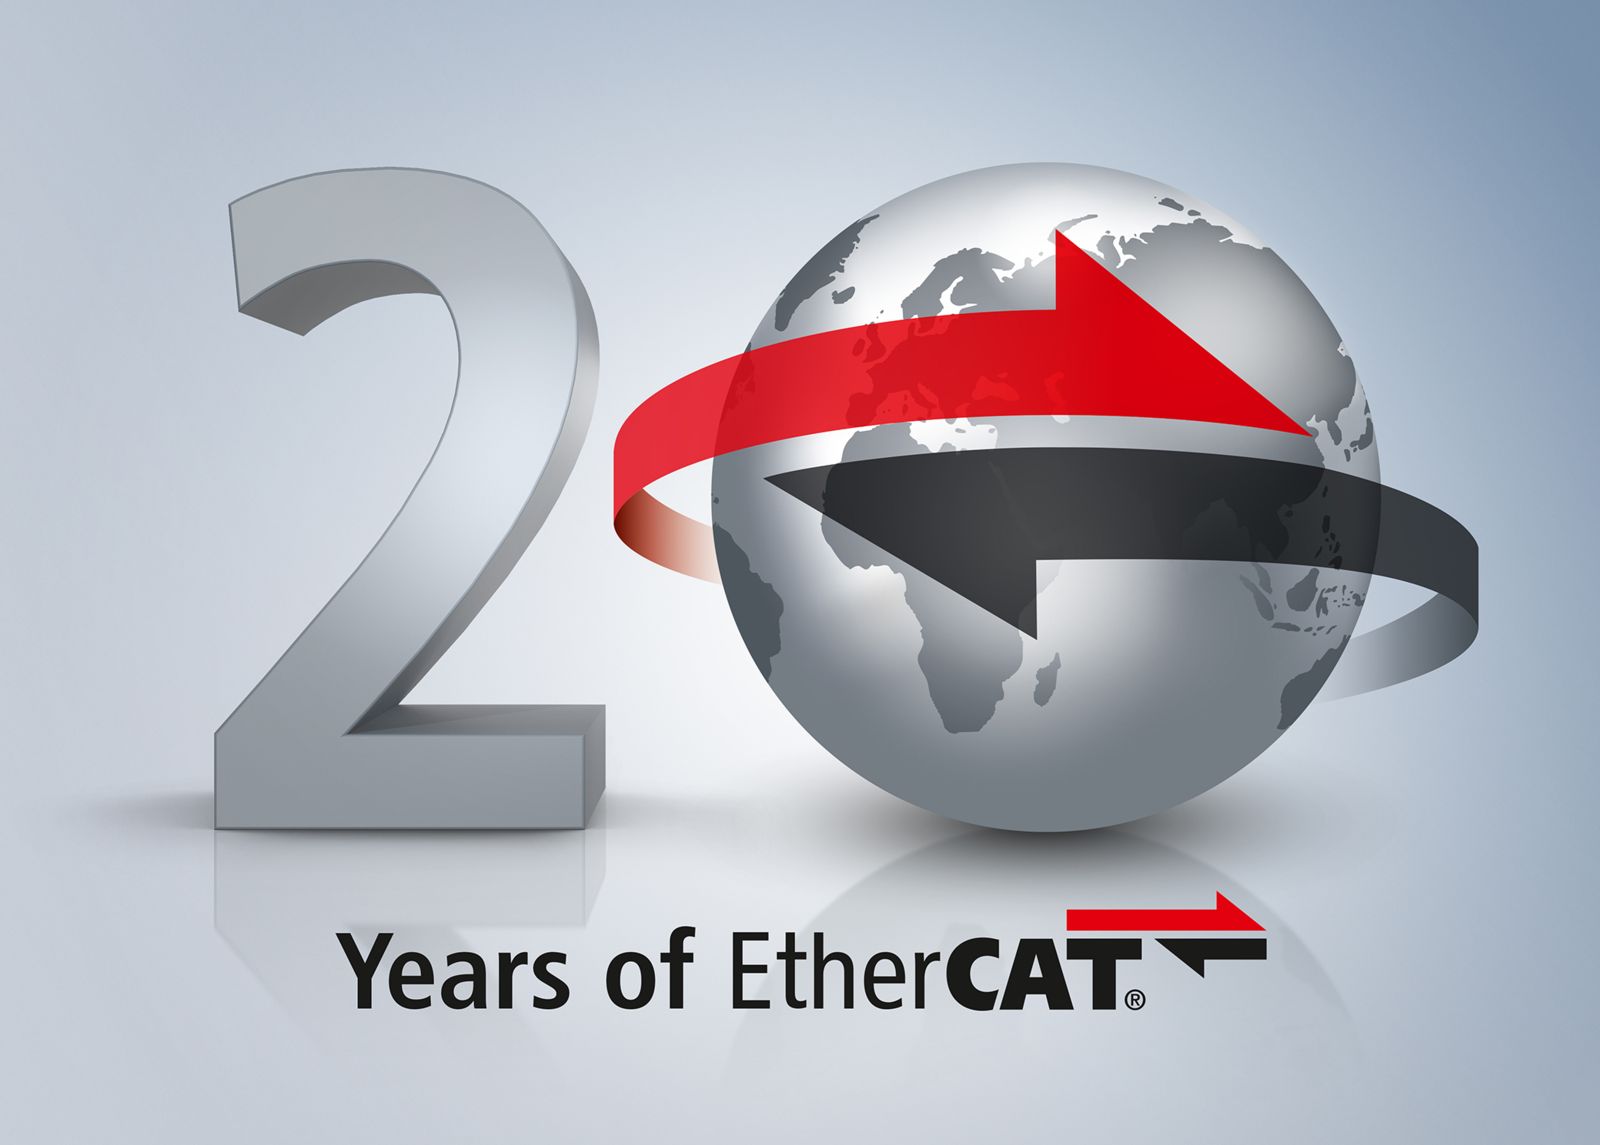 EtherCAT celebrates 20 years